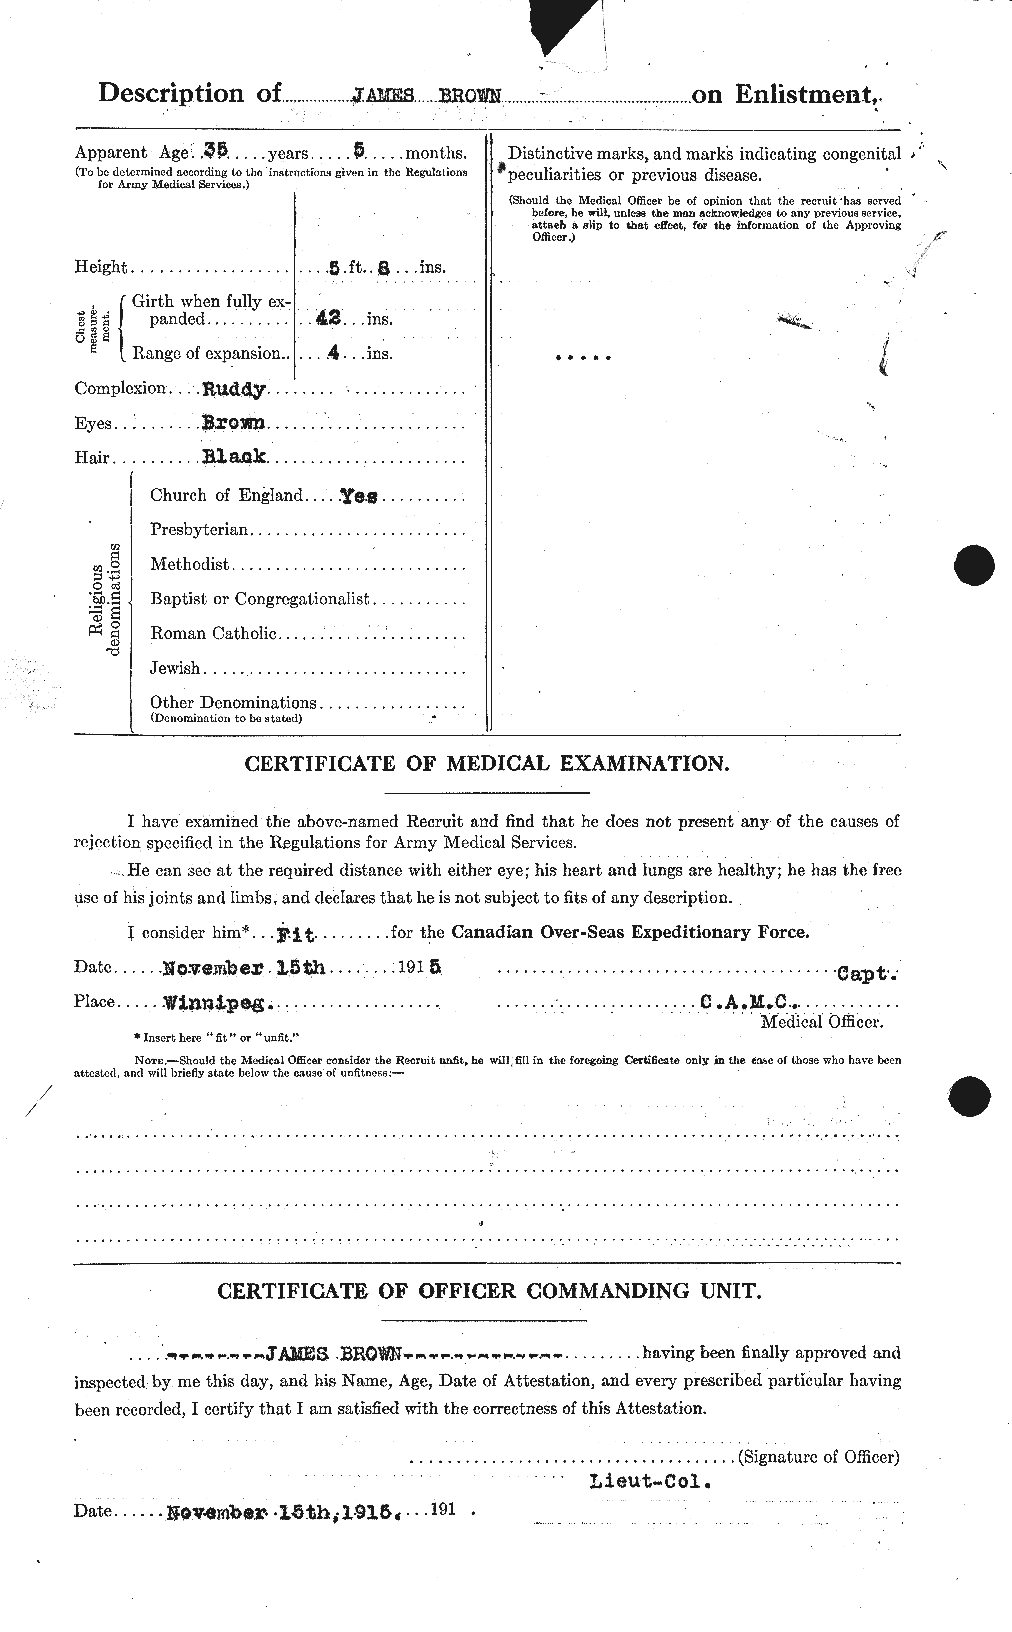 Dossiers du Personnel de la Première Guerre mondiale - CEC 265764b